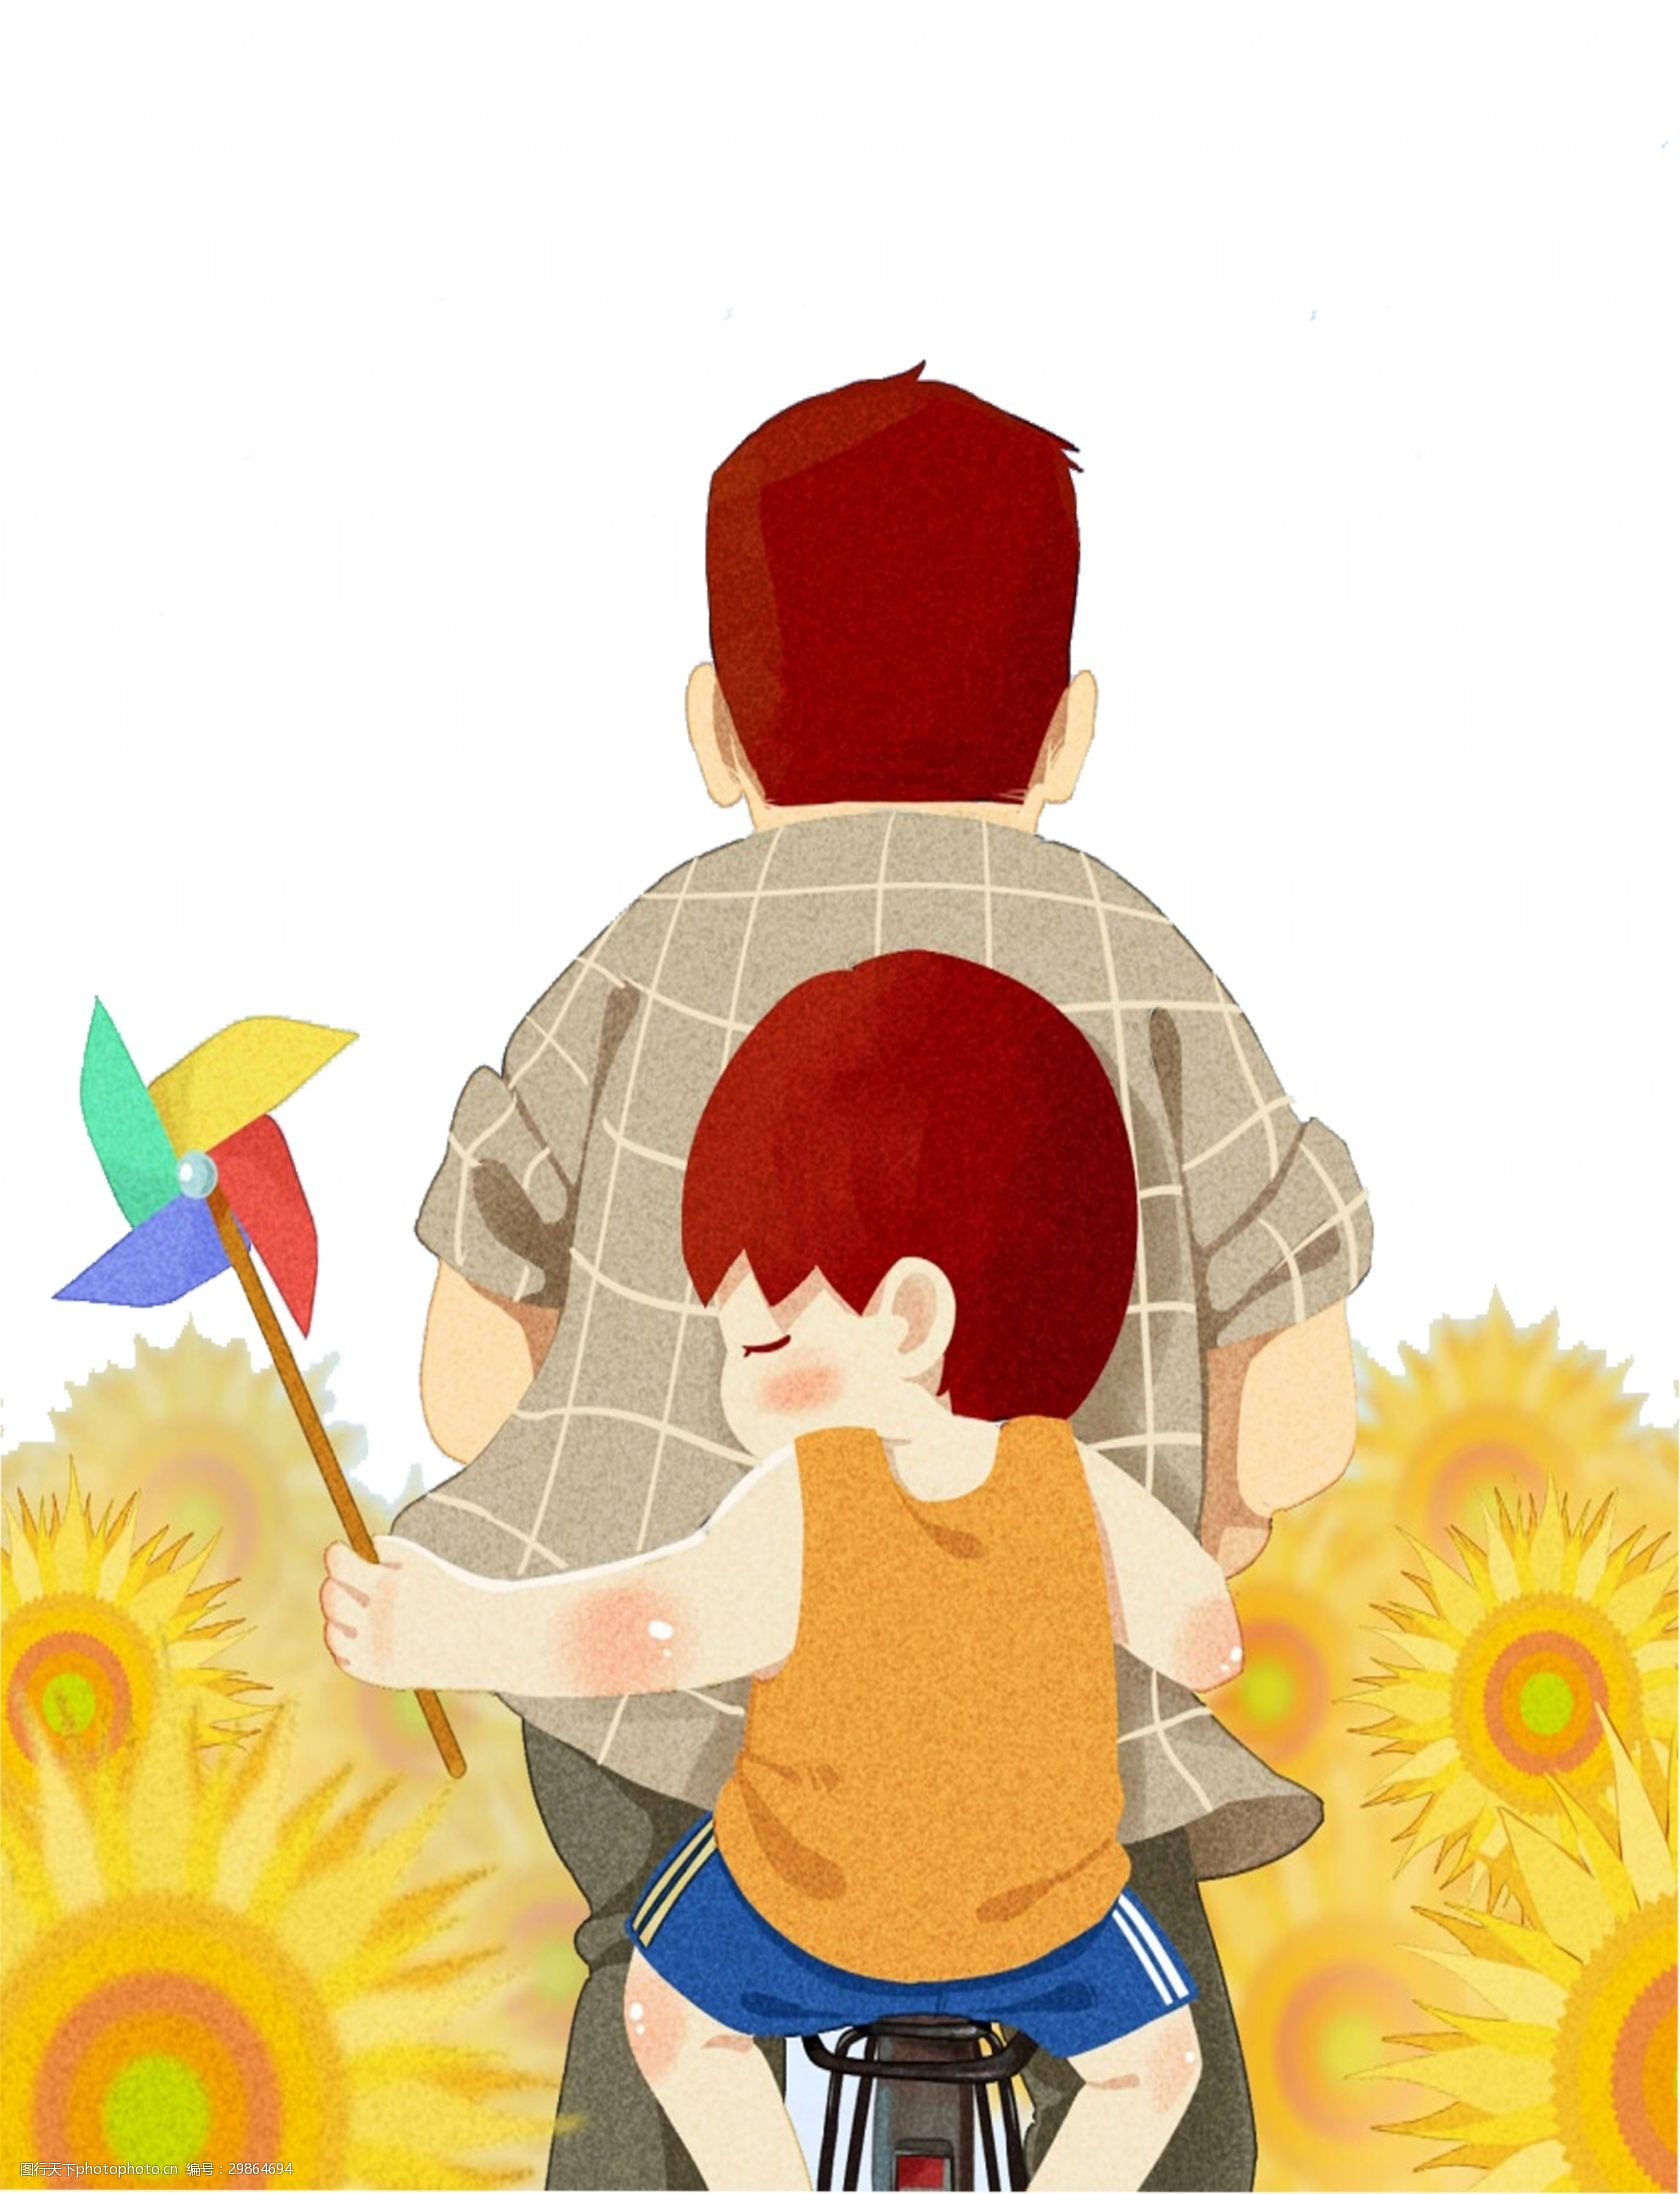 关键词:手绘卡通父亲节装饰素材 卡通 父亲节 装饰 向日葵 可爱 手绘